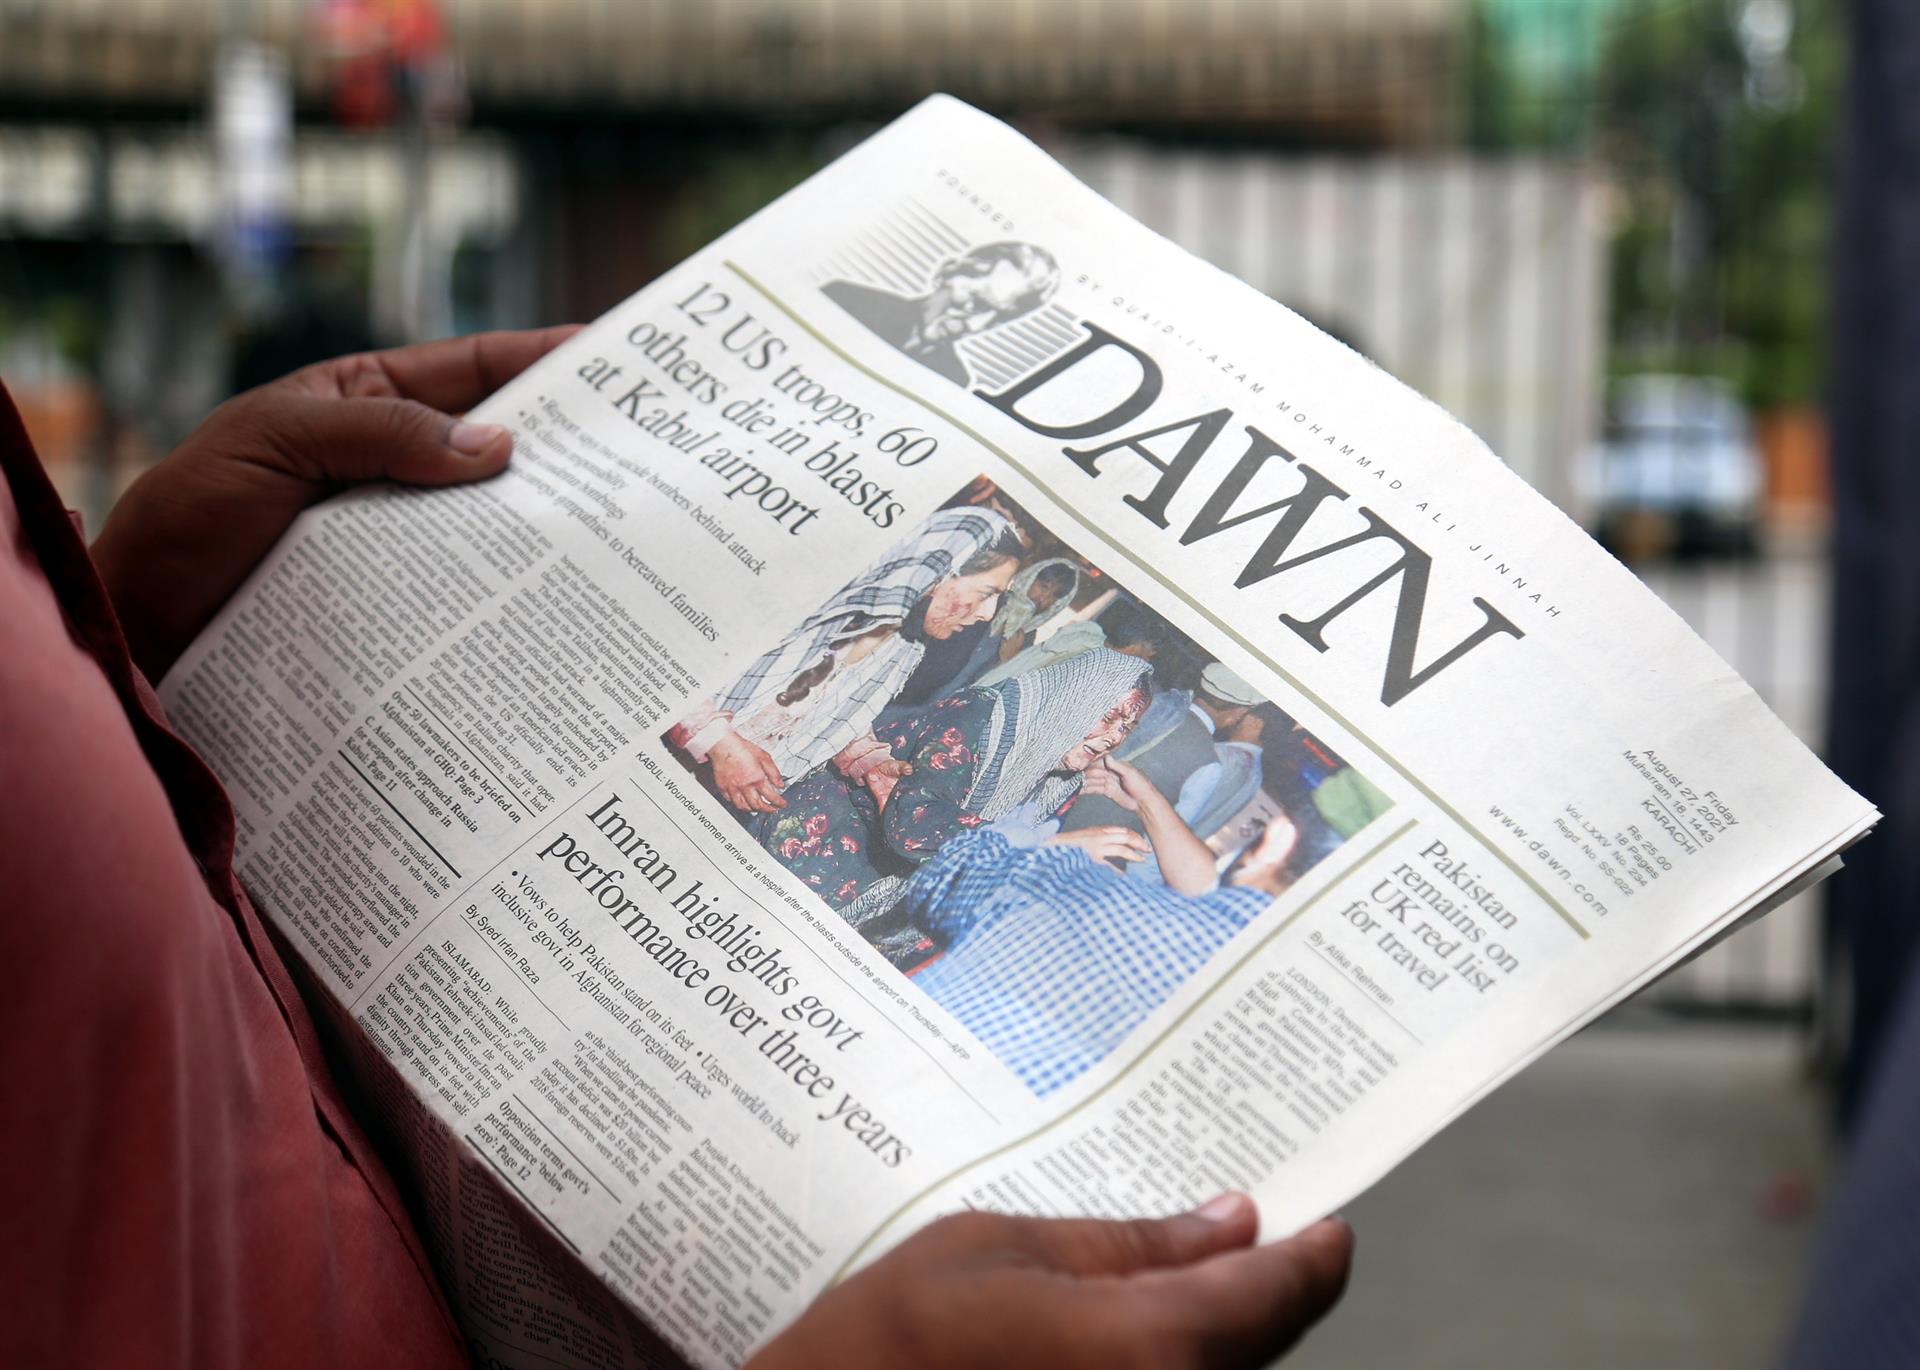 Pessoa lendo jornal com manchete mostrando ataques no afeganistão